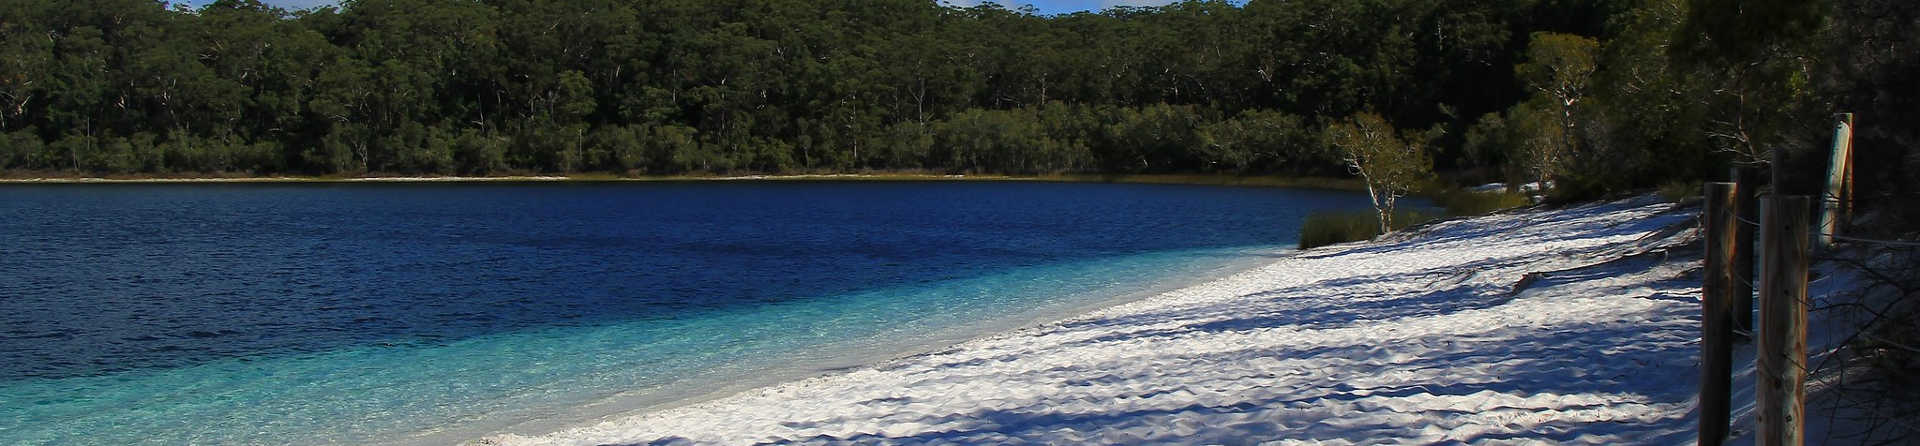 Is Fraser Island Dangerous?